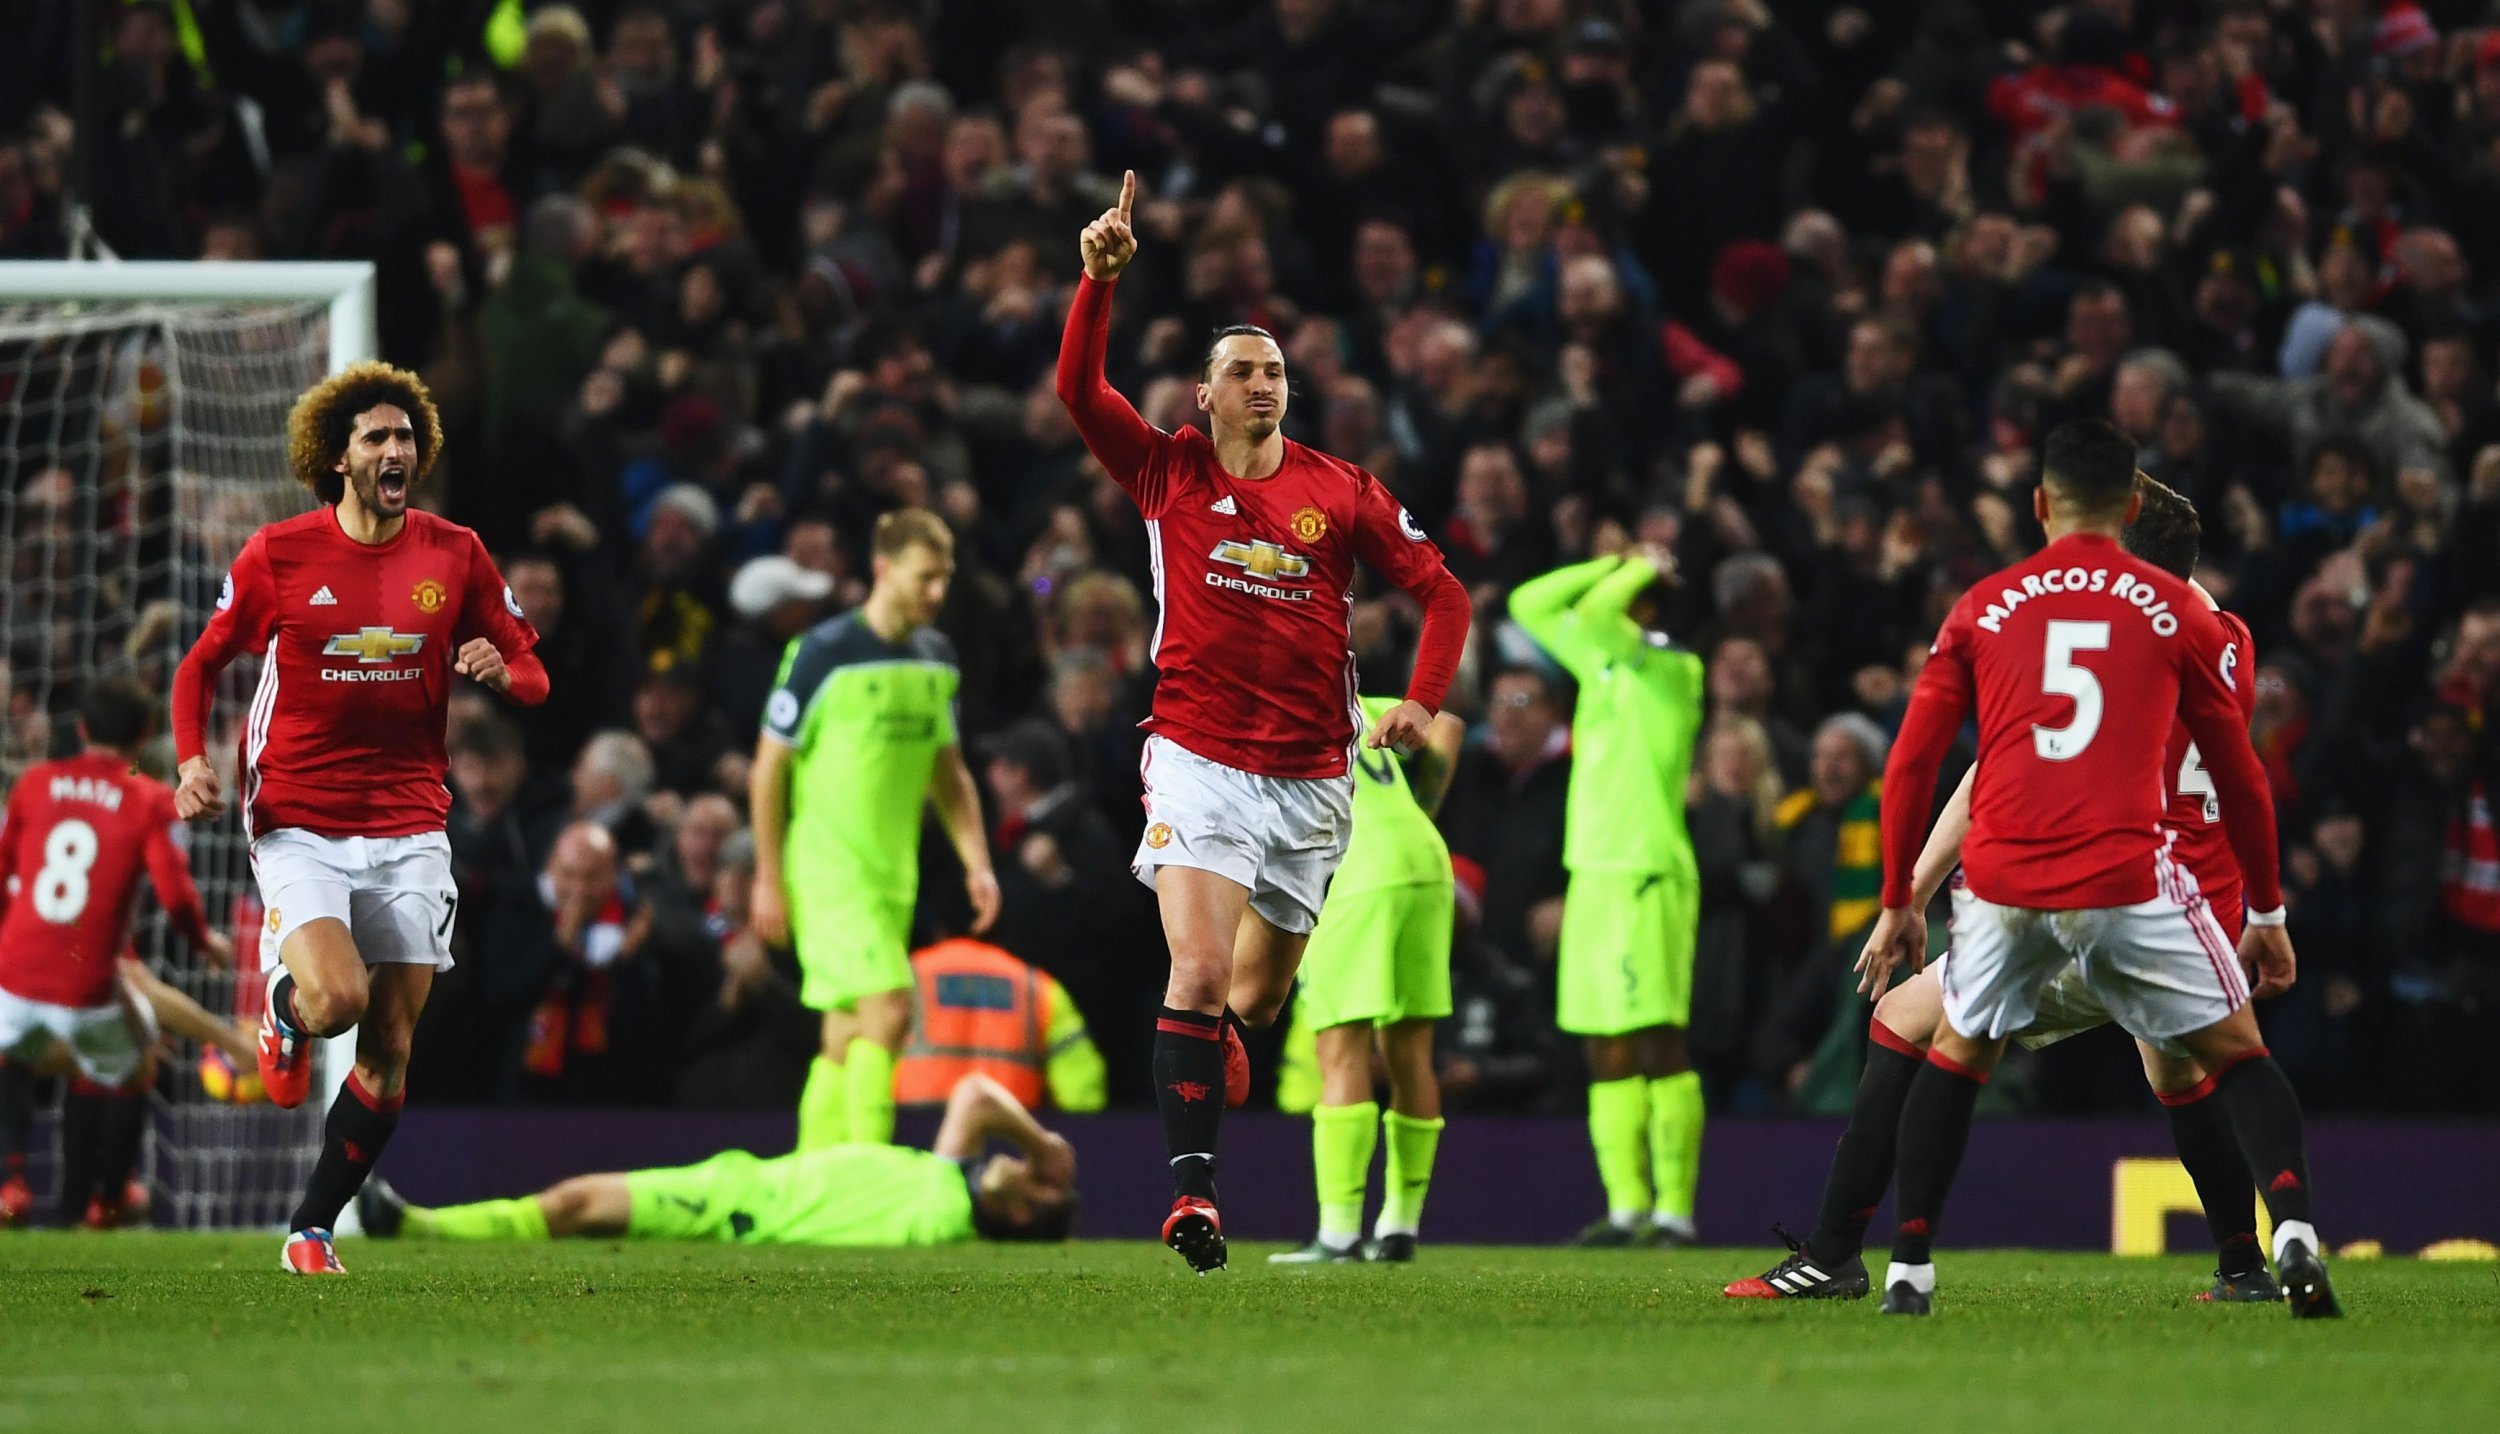 Zlatan Ibrahimovic celebrates scoring for Manchester United